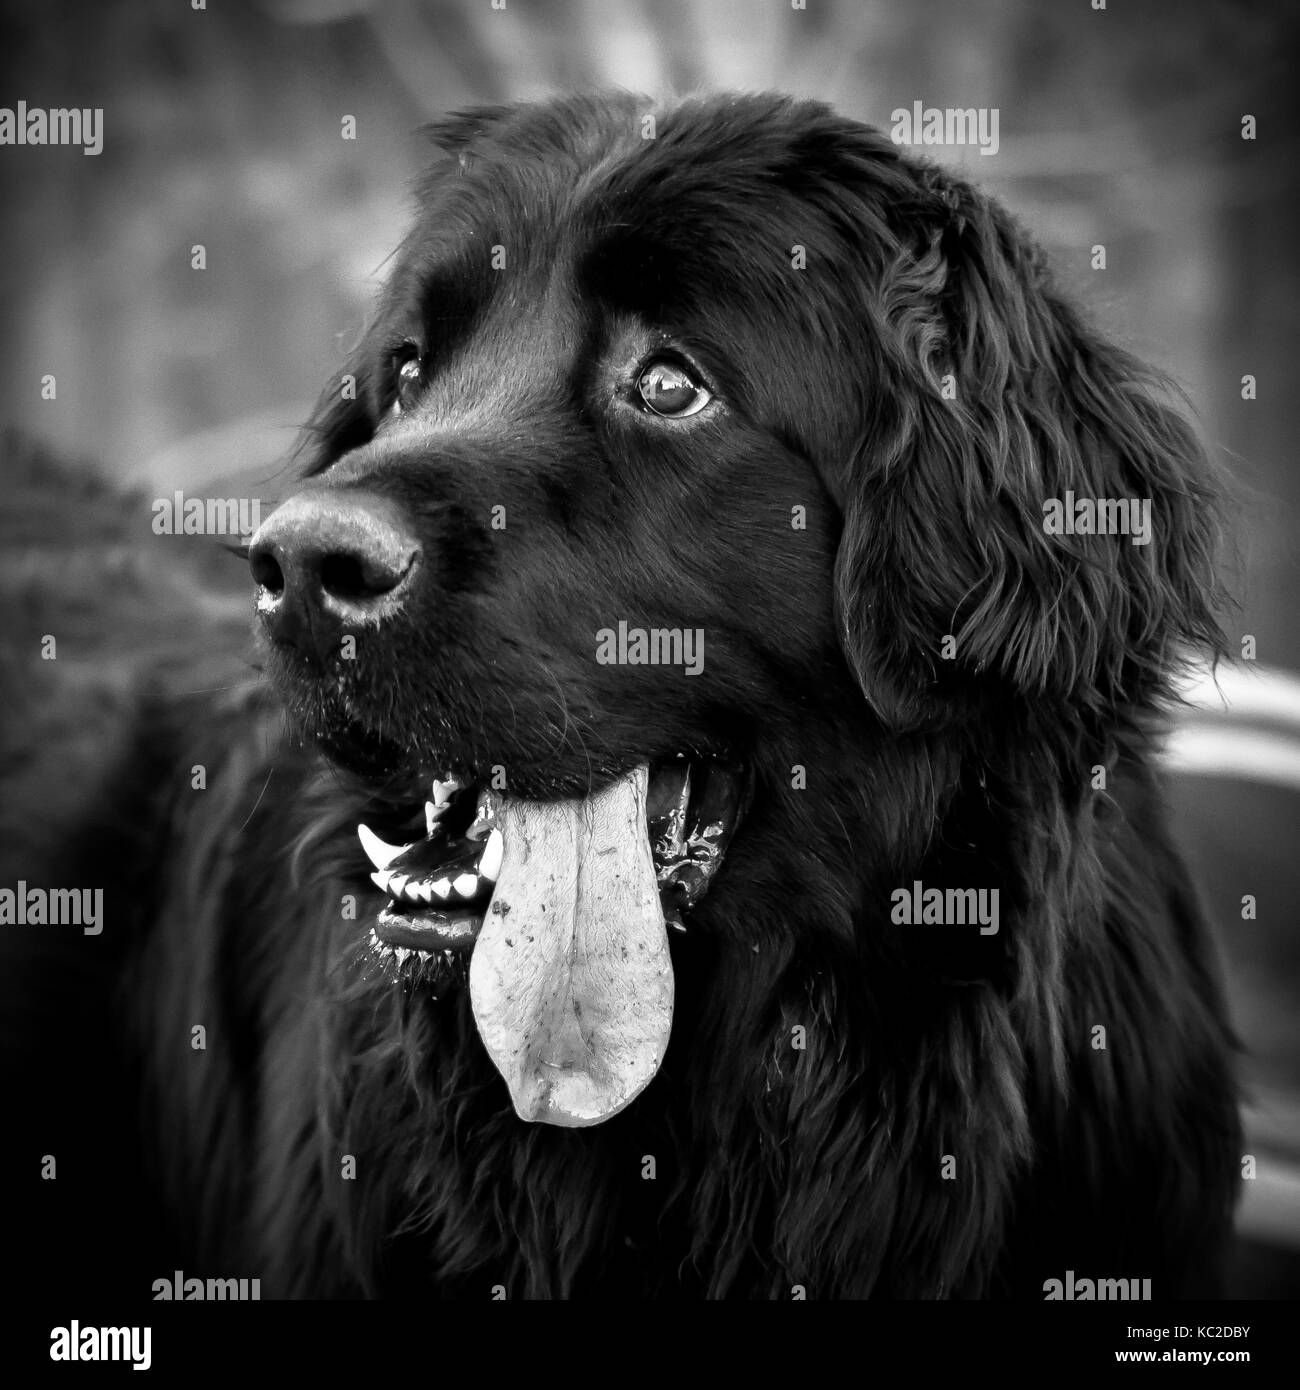 Head shot noir et blanc d'un chien Terre-Neuve noir ludique avec la langue qui sort. Banque D'Images